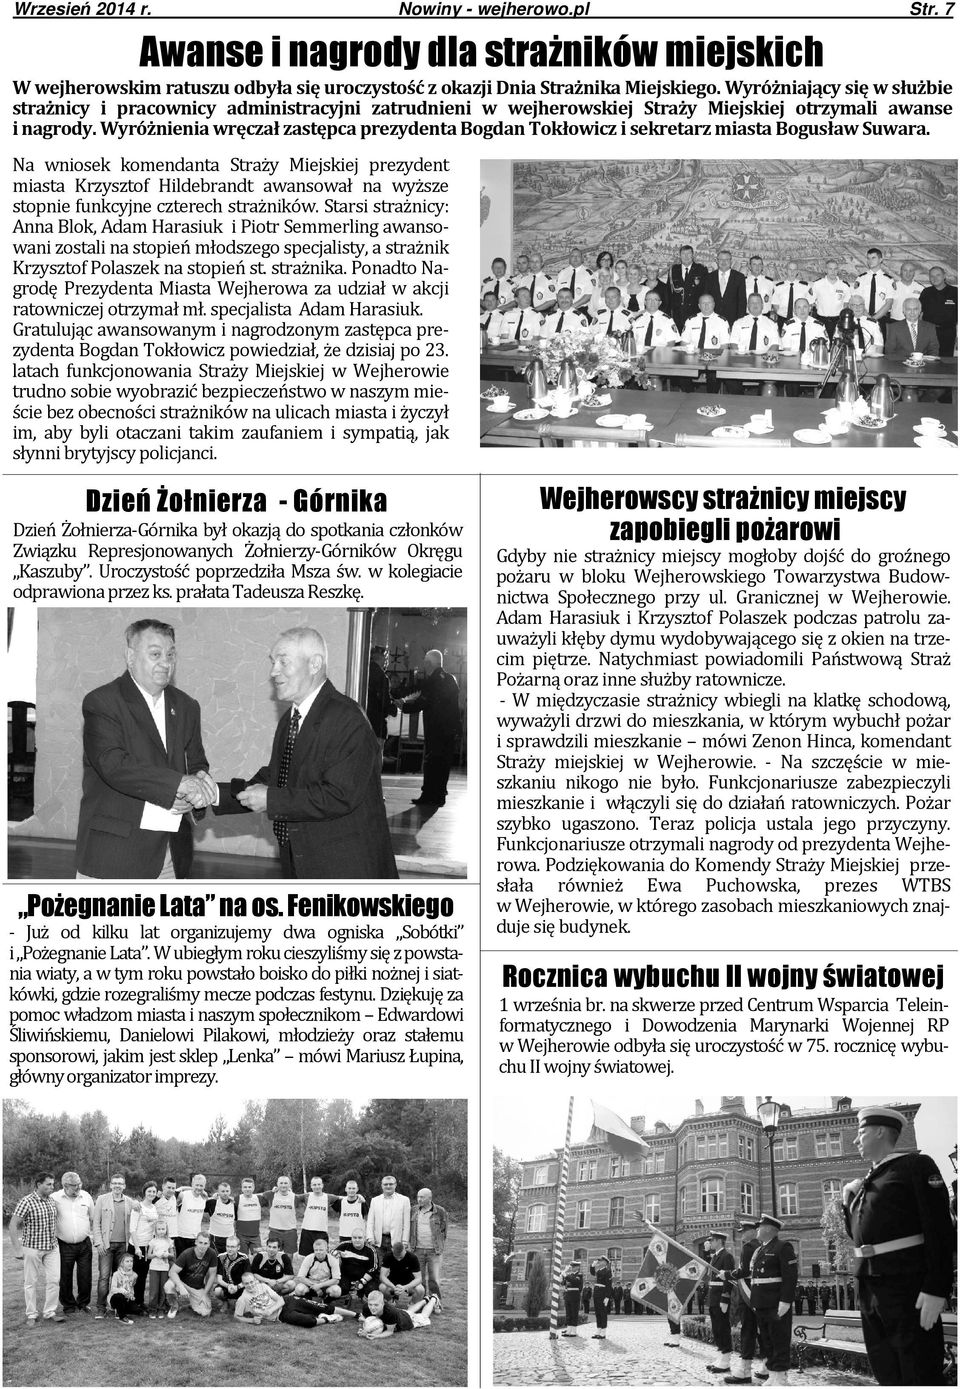 Wyróżnienia wręczał zastępca prezydenta Bogdan Tokłowicz i sekretarz miasta Bogusław Suwara.